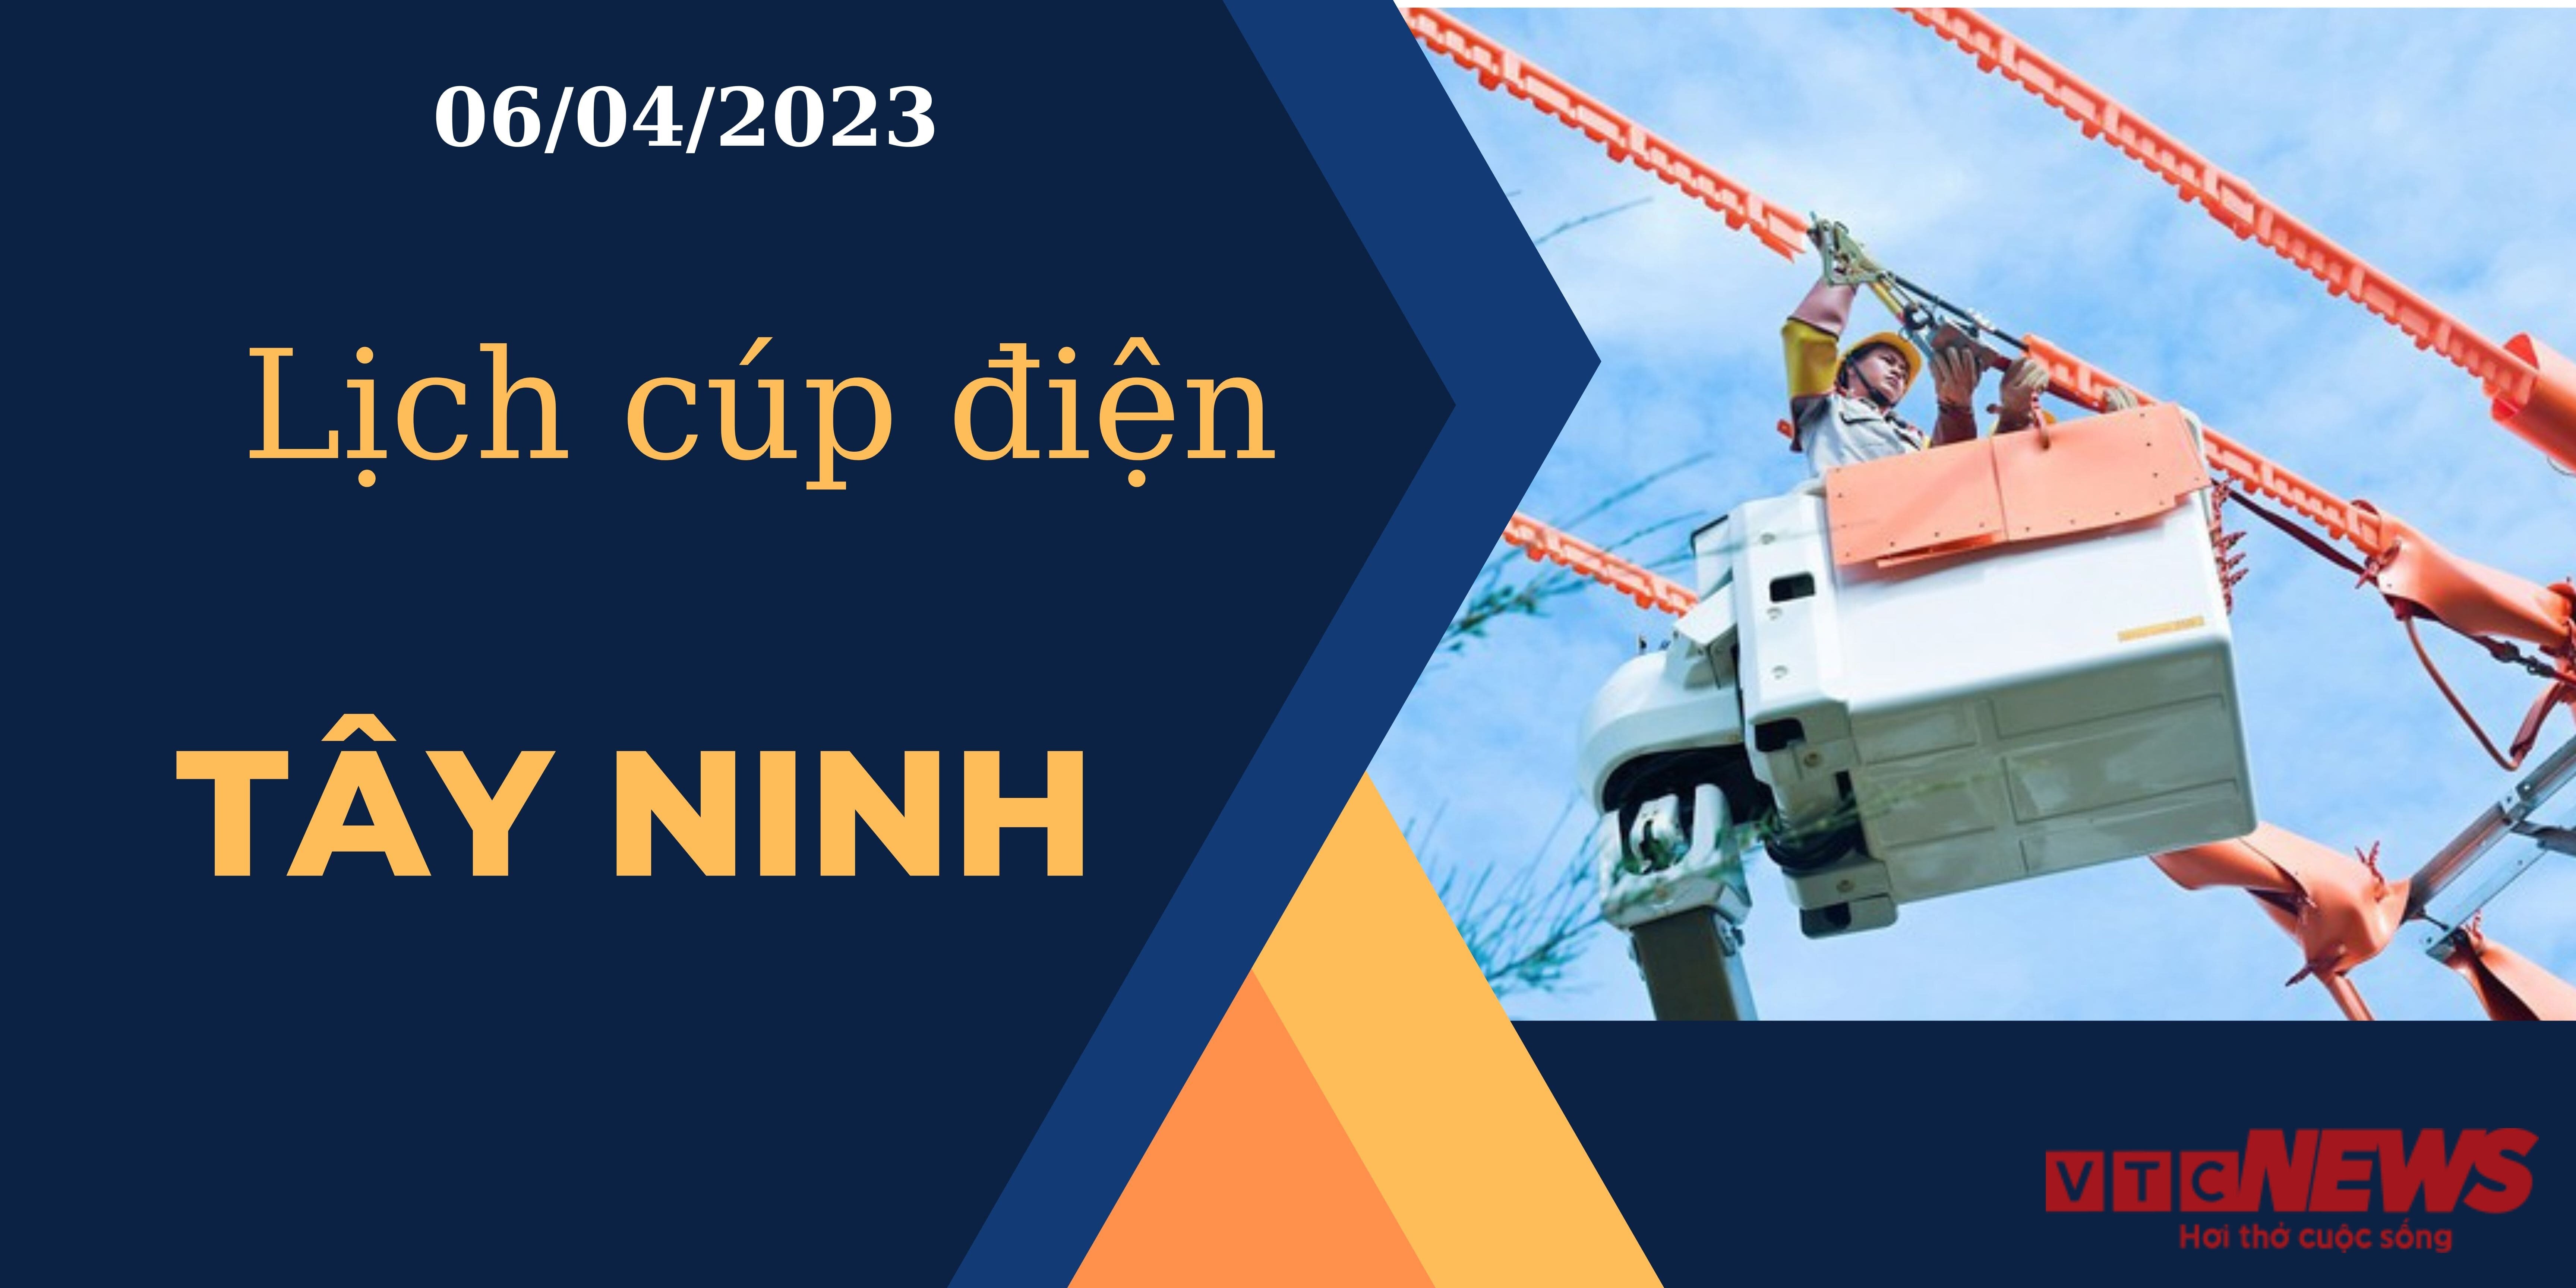 Lịch cúp điện hôm nay tại Tây Ninh ngày 06/04/2023 - 1